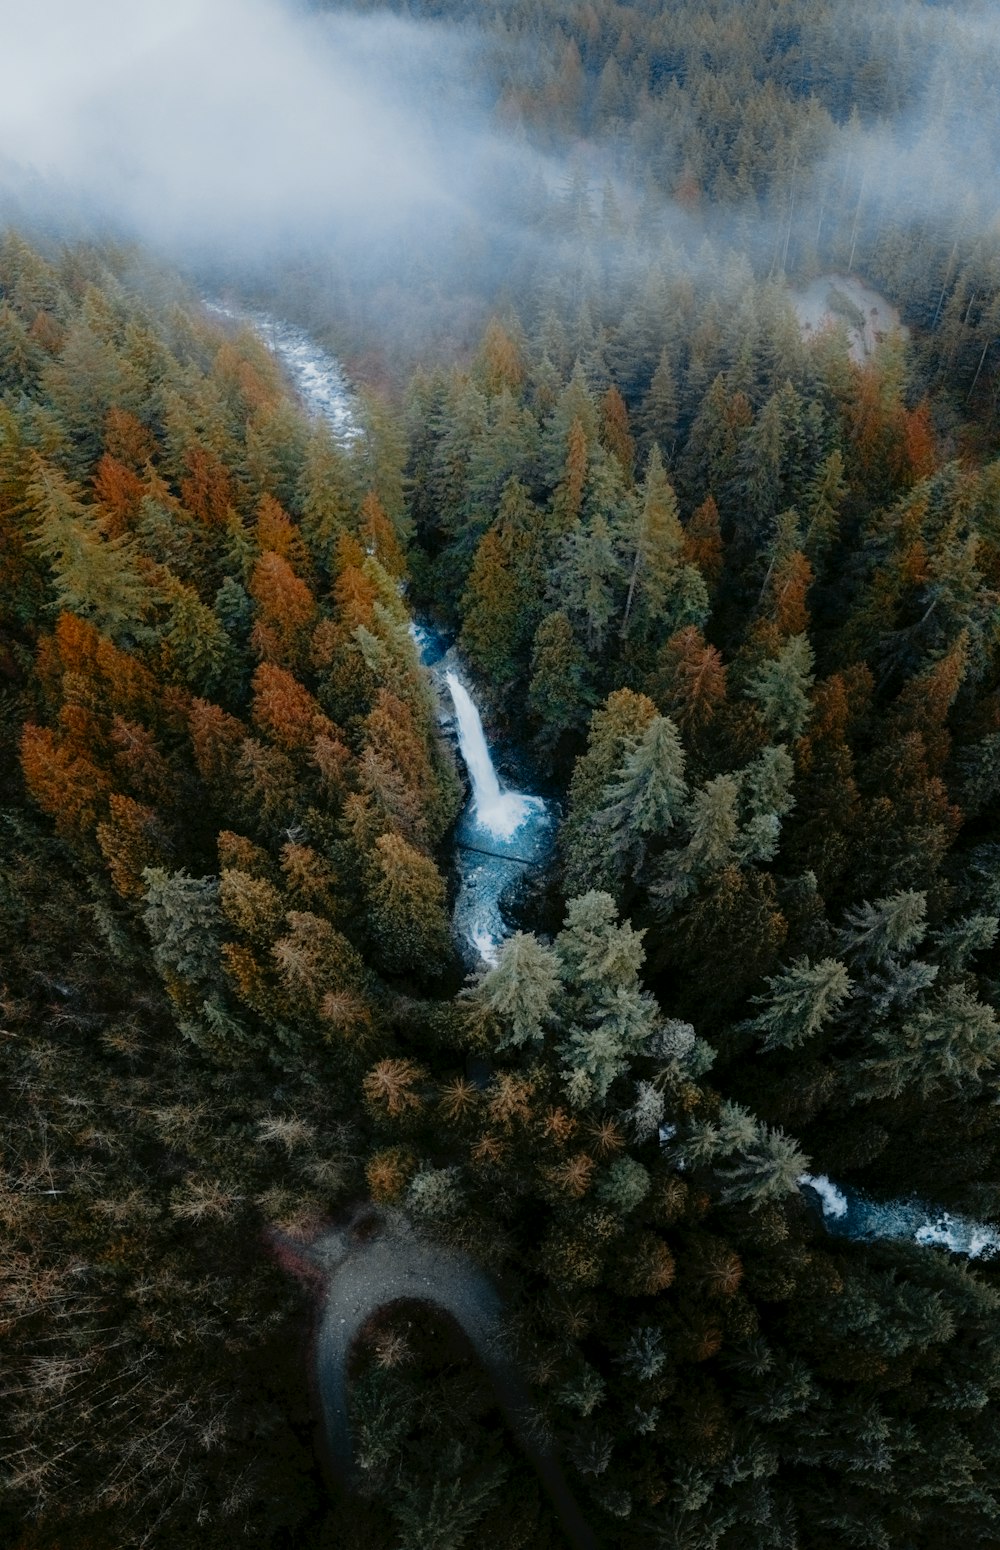 Una veduta aerea di un fiume che scorre attraverso una foresta